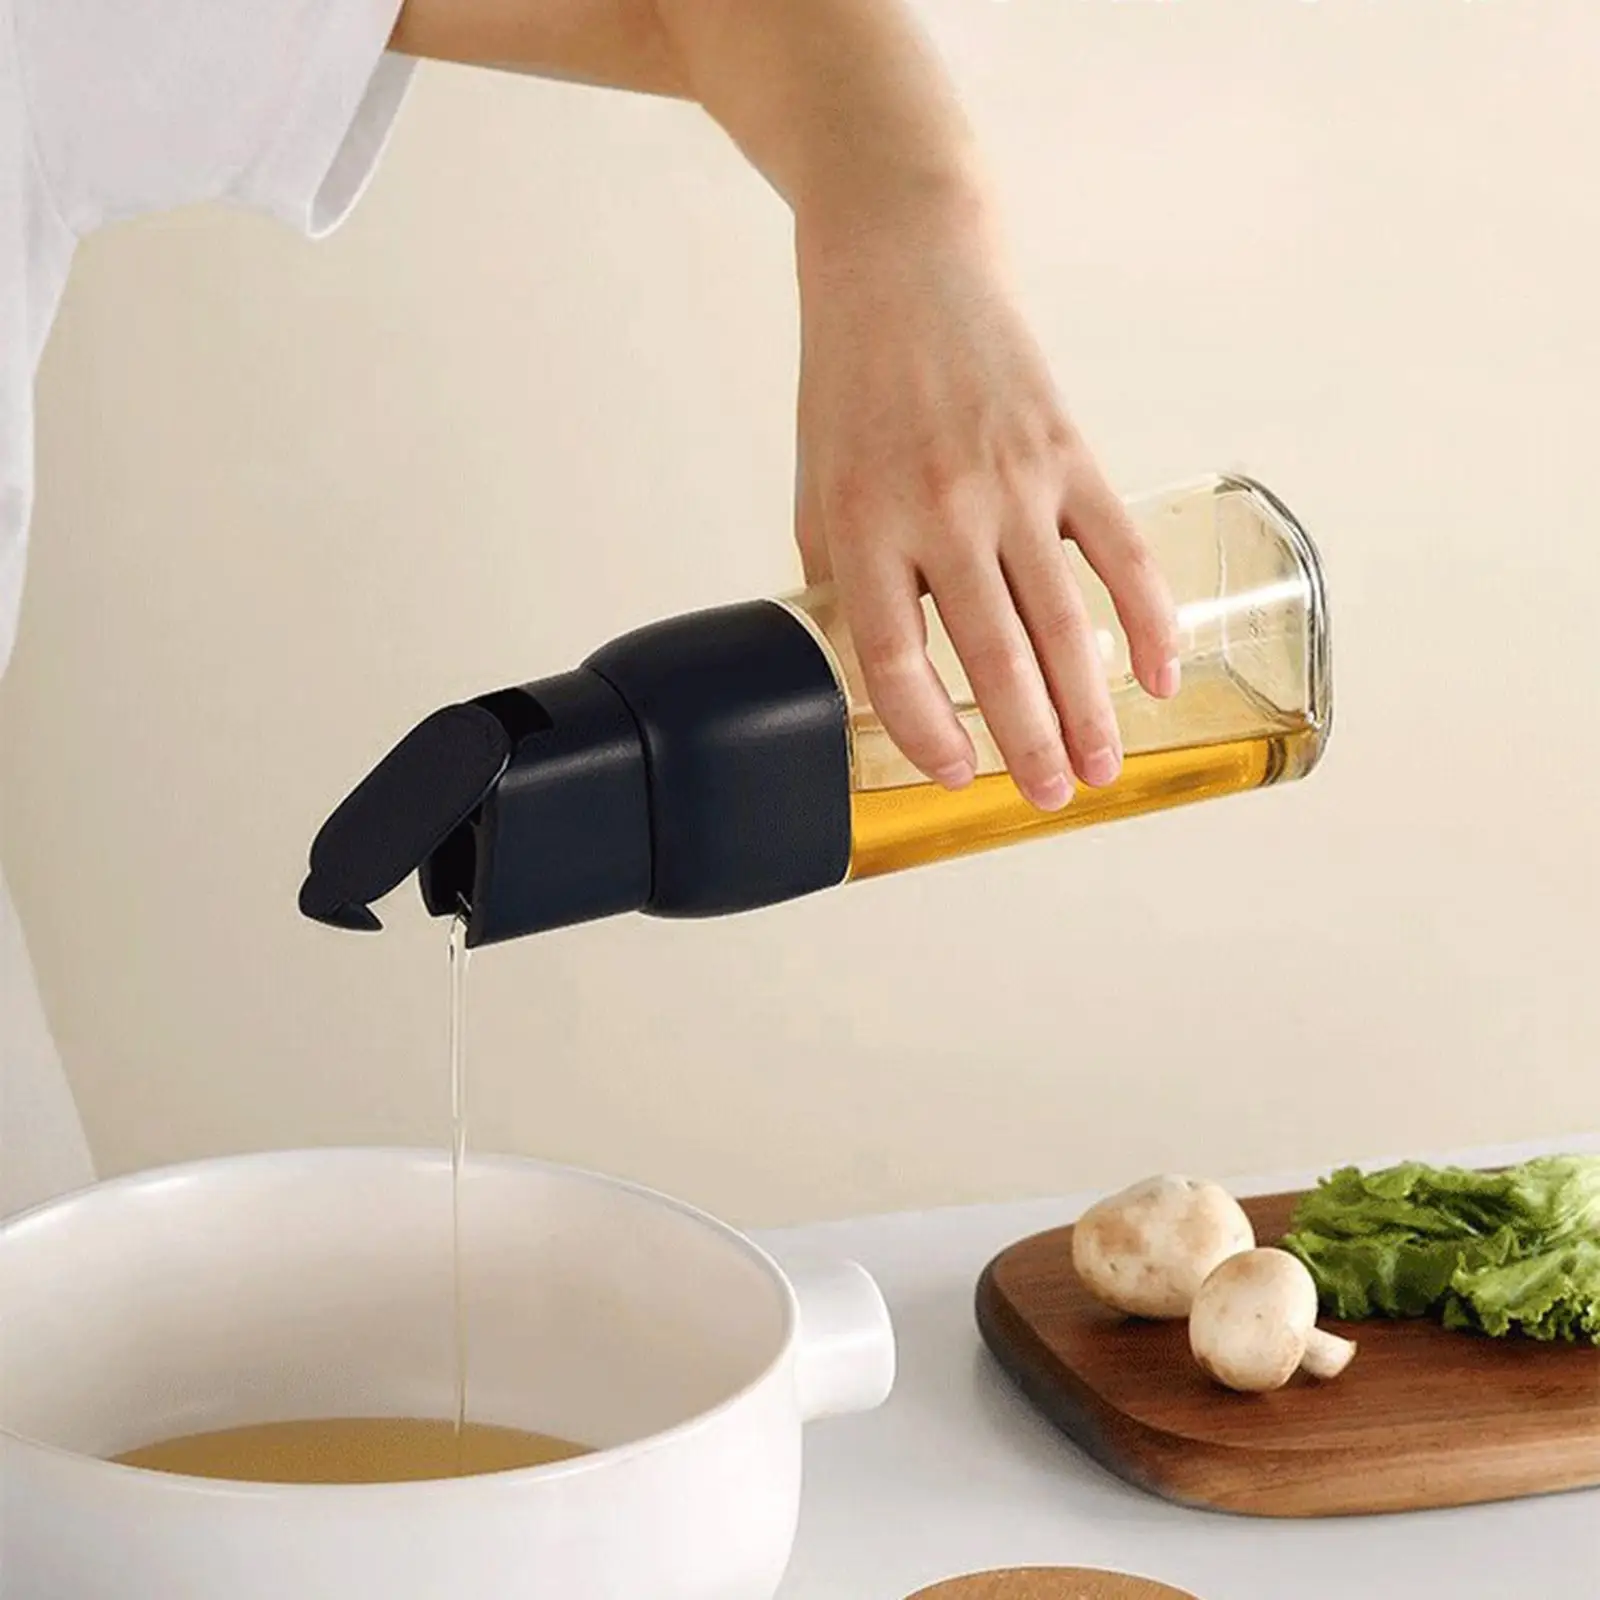 Clear Olive Oil Dispenser Bottle Cooking Oil Dispenser Soy Sauce Bottle for Kitchen Cooking Baking Grilling